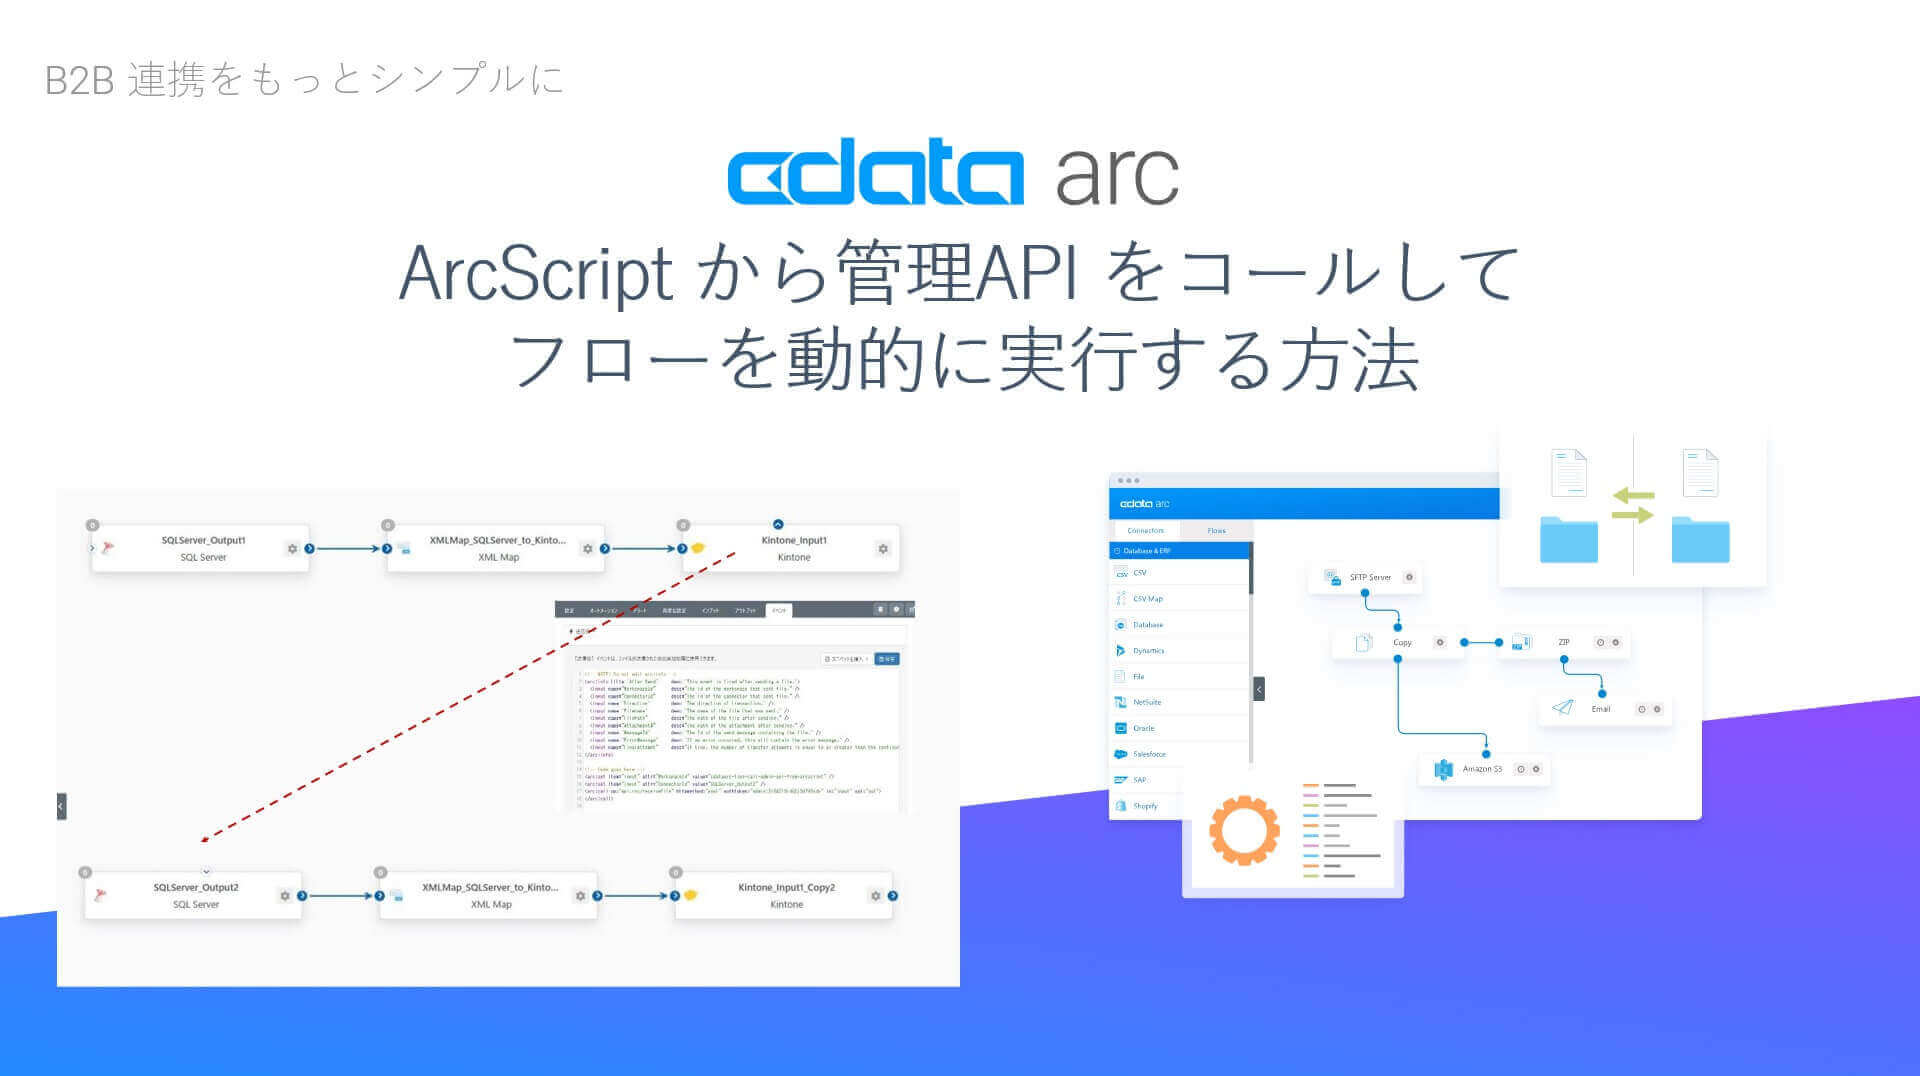 ArcScript から管理API をコールしてフローを動的に実行する方法